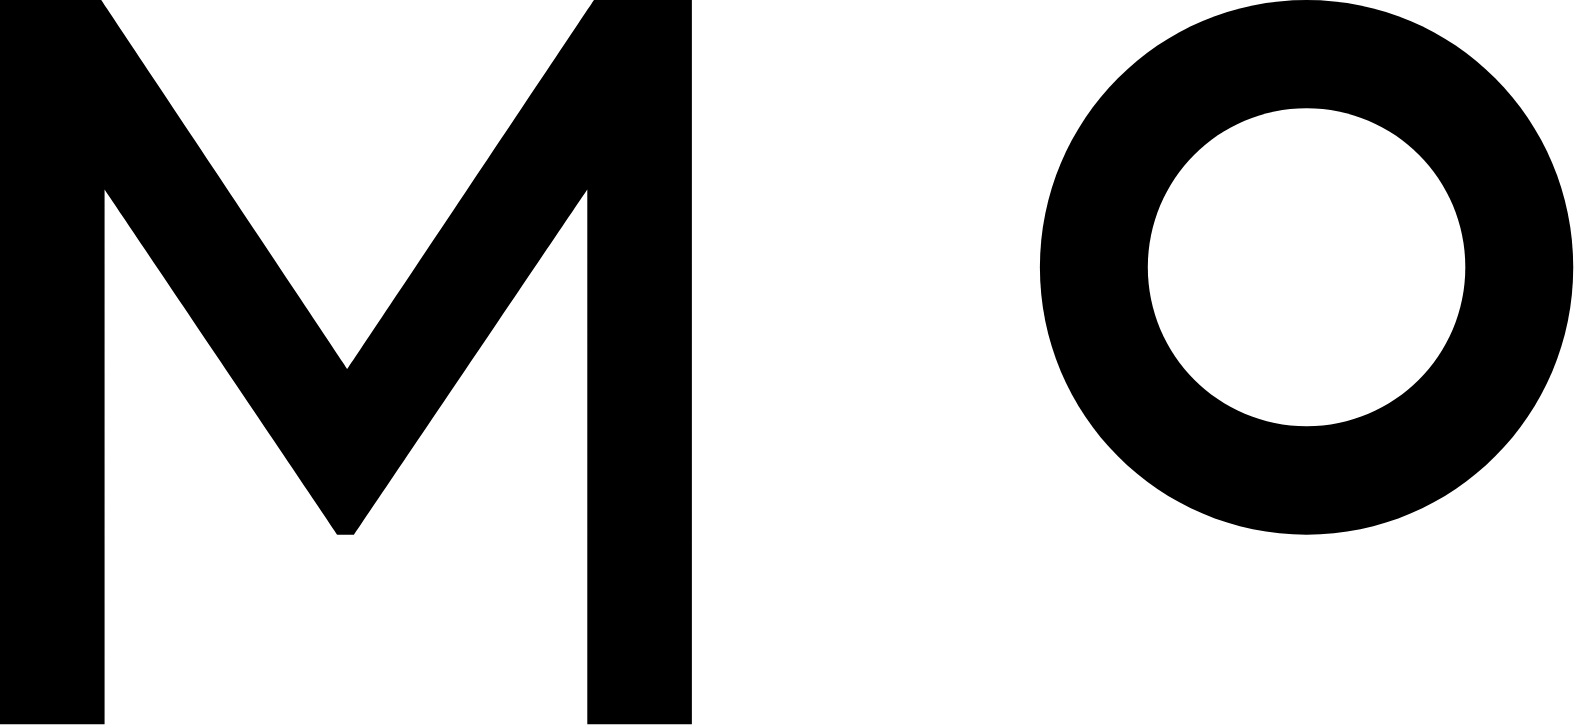 Molekule Group logo (transparent PNG)